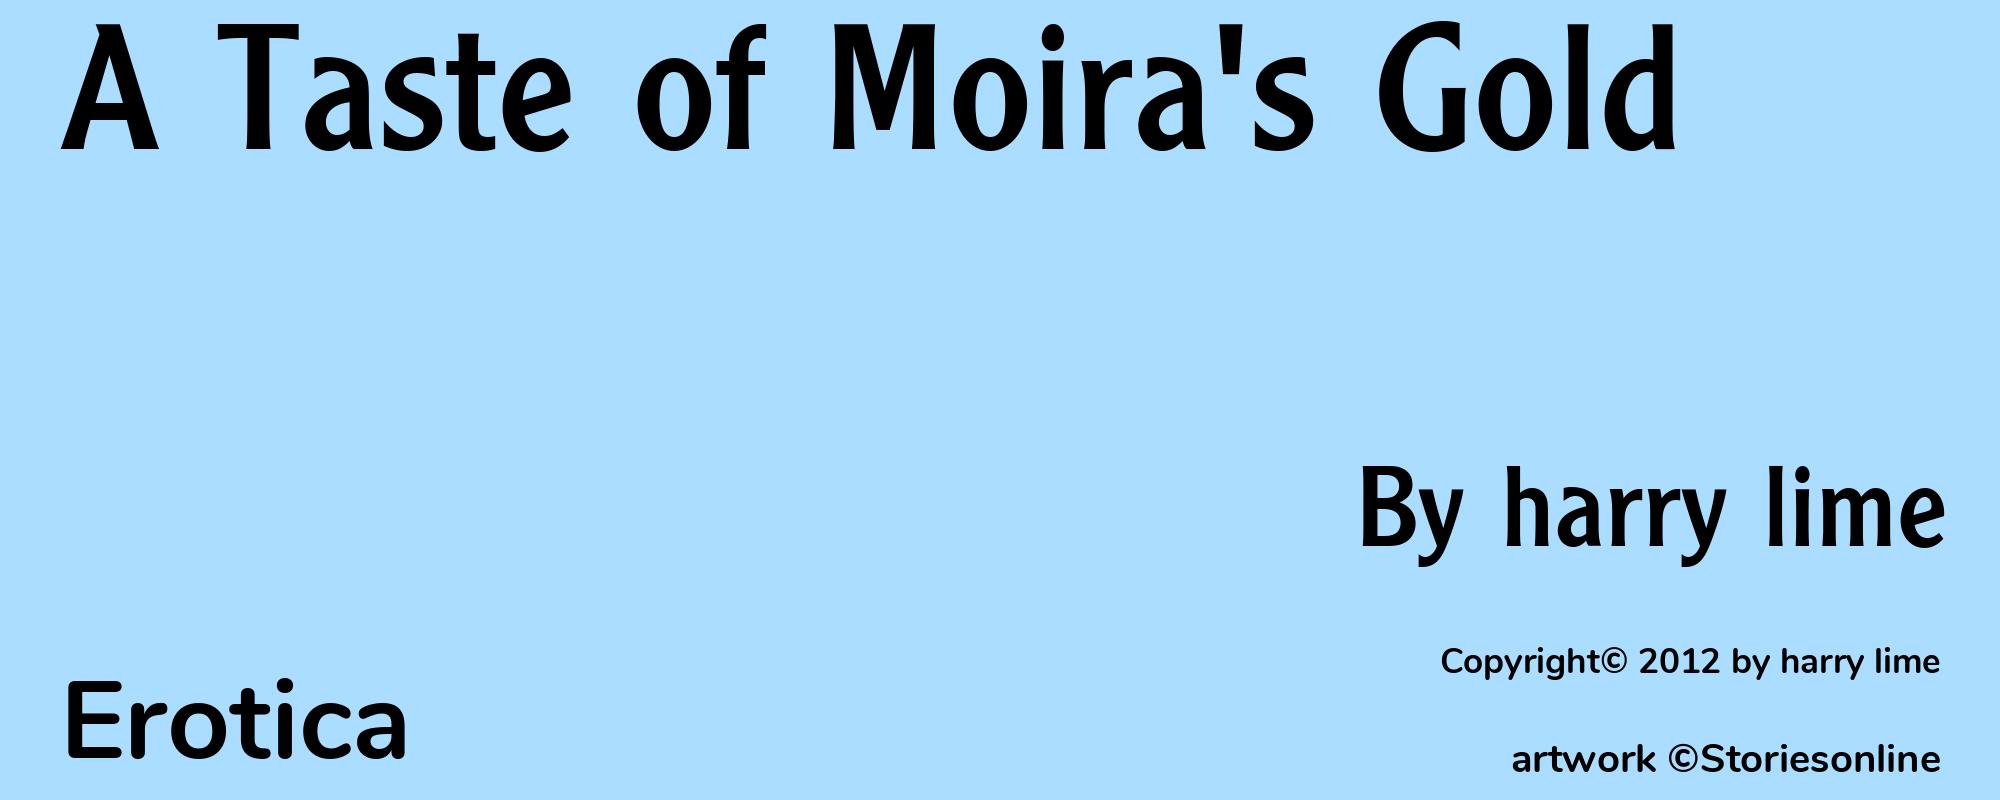 A Taste of Moira's Gold - Cover